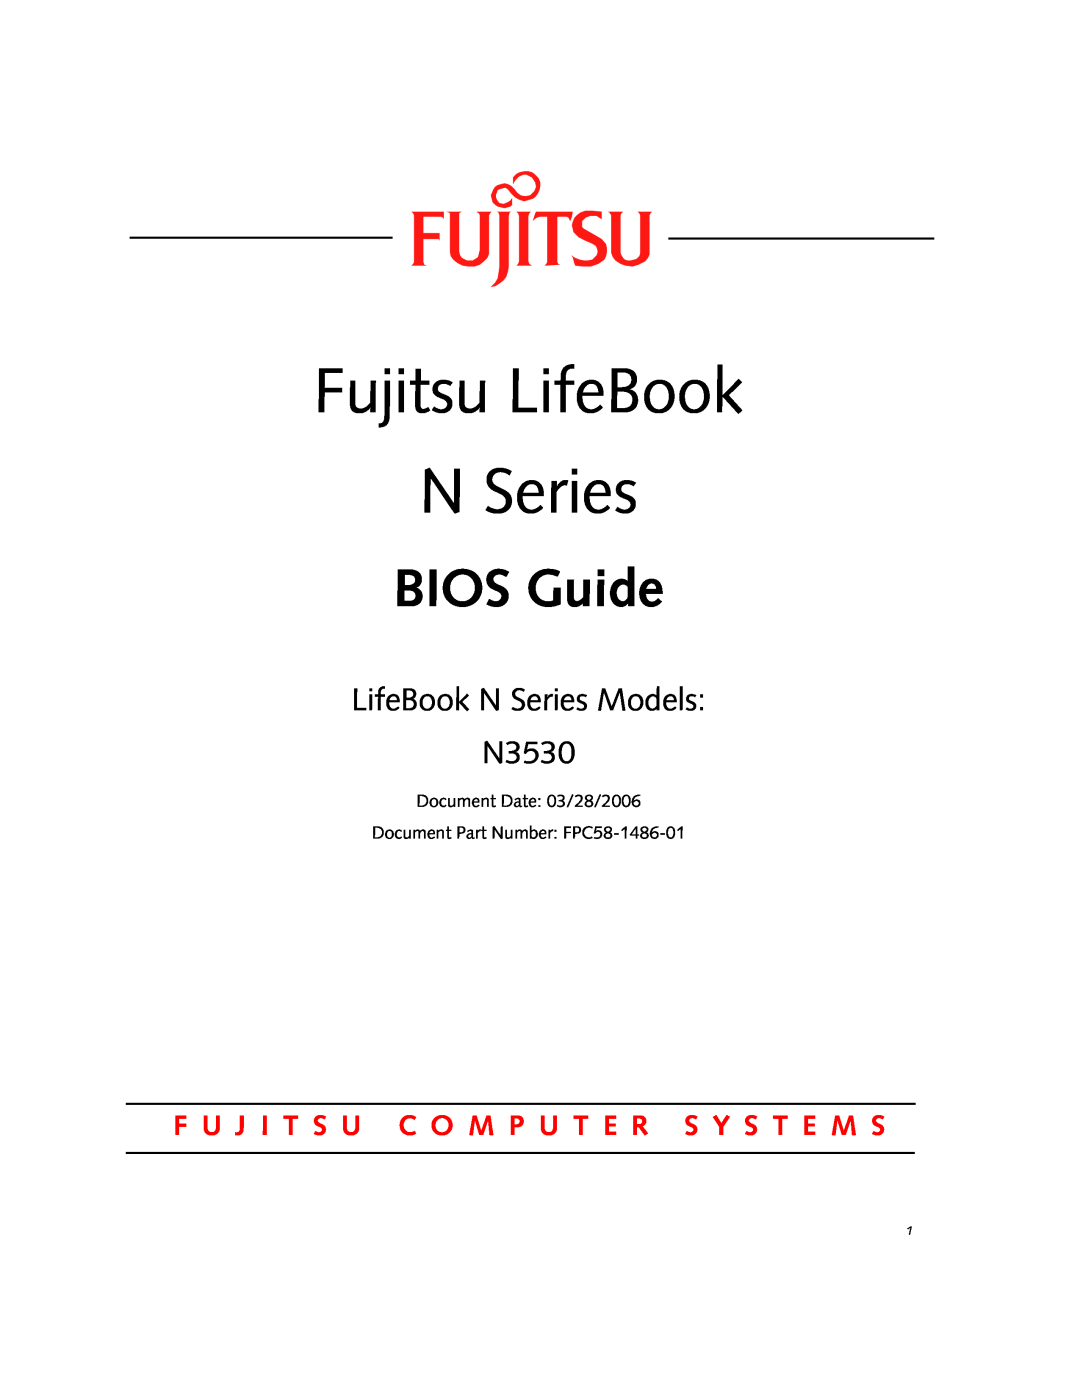 Fujitsu manual Fujitsu LifeBook N Series, BIOS Guide, LifeBook N Series Models N3530 